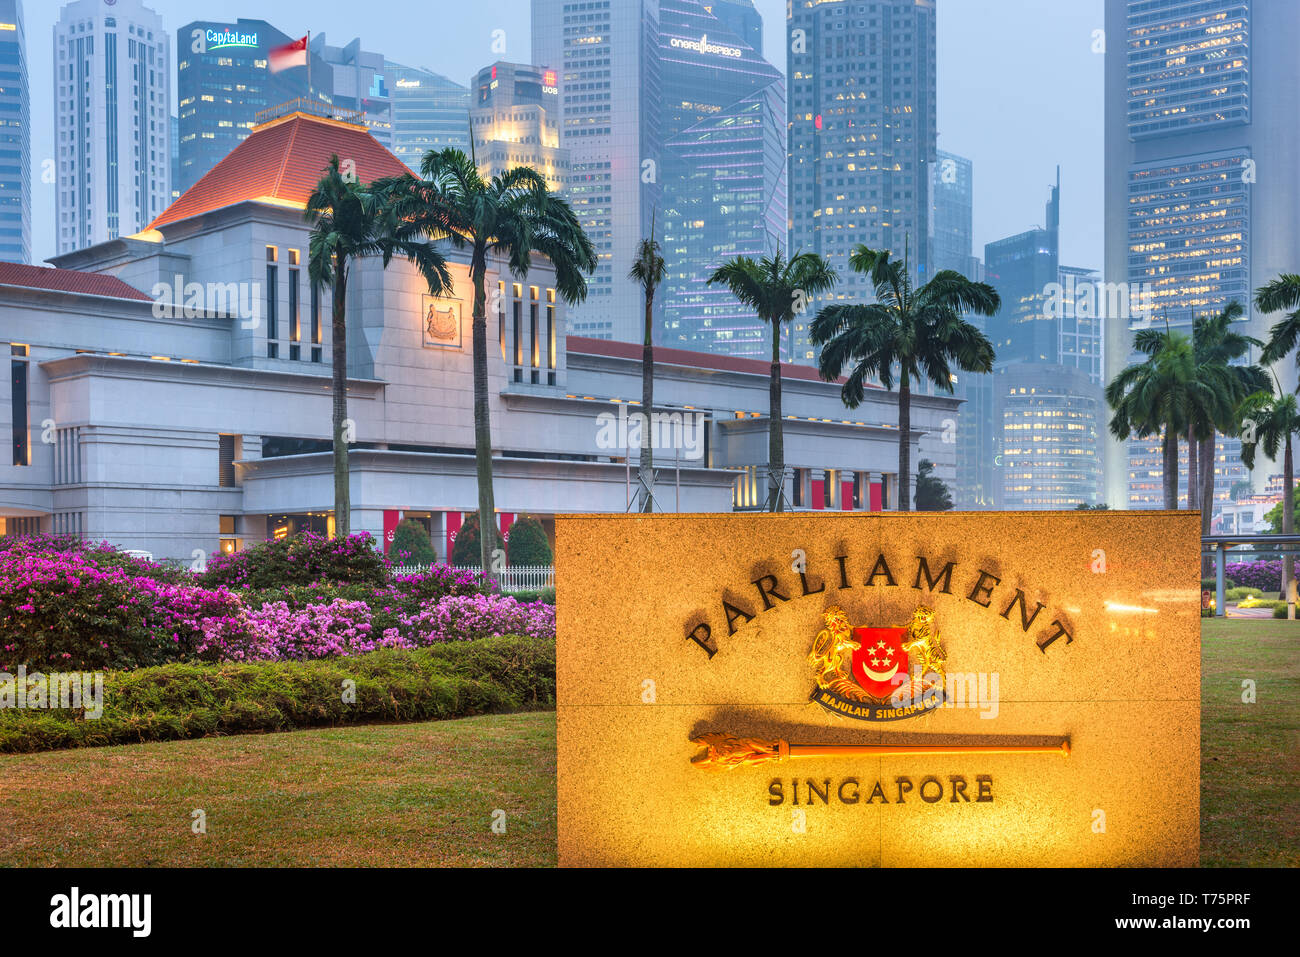 Singapour - septembre 9, 2015 : le Parlement de la République de Singapour. Le bâtiment date de 1999. Banque D'Images